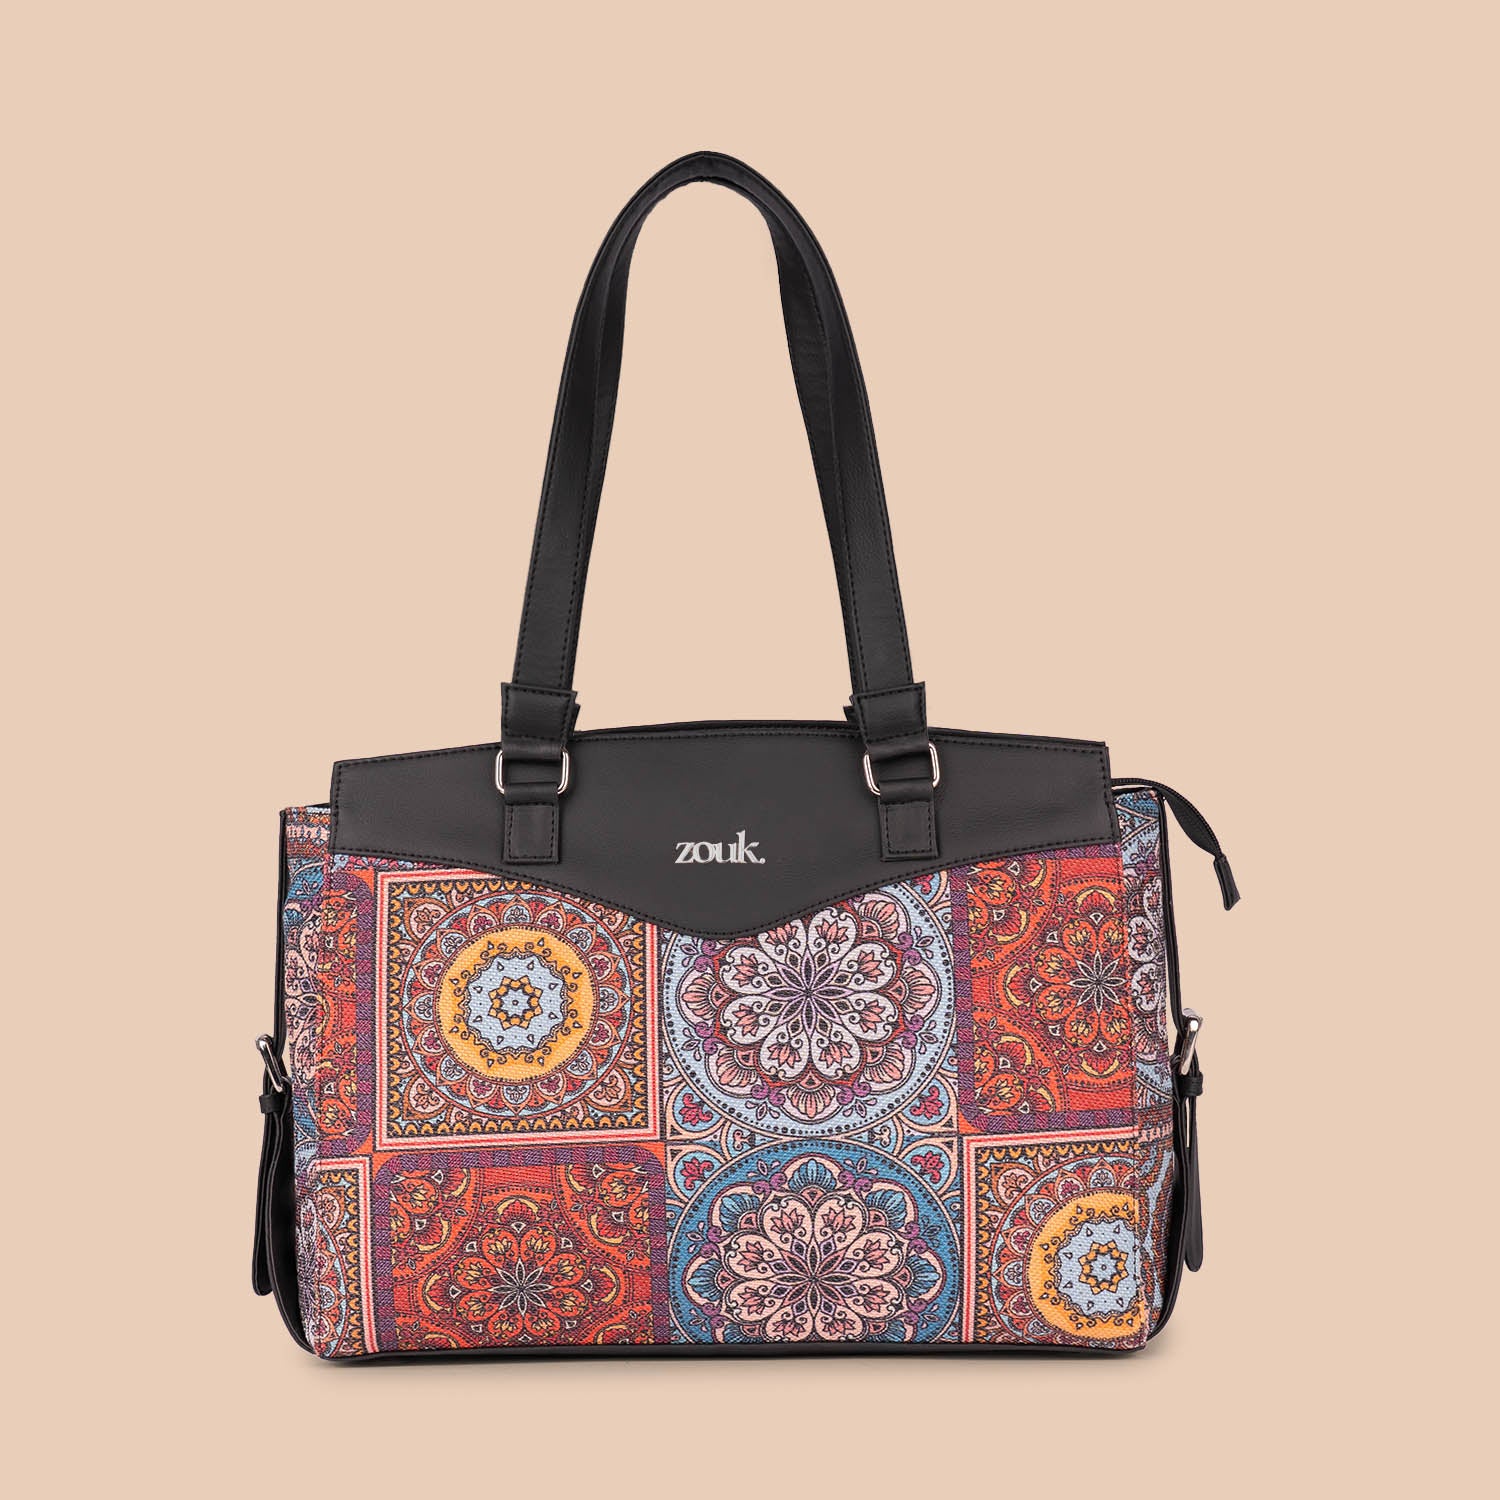 Multicolor Mandala Print Women's Work Bag